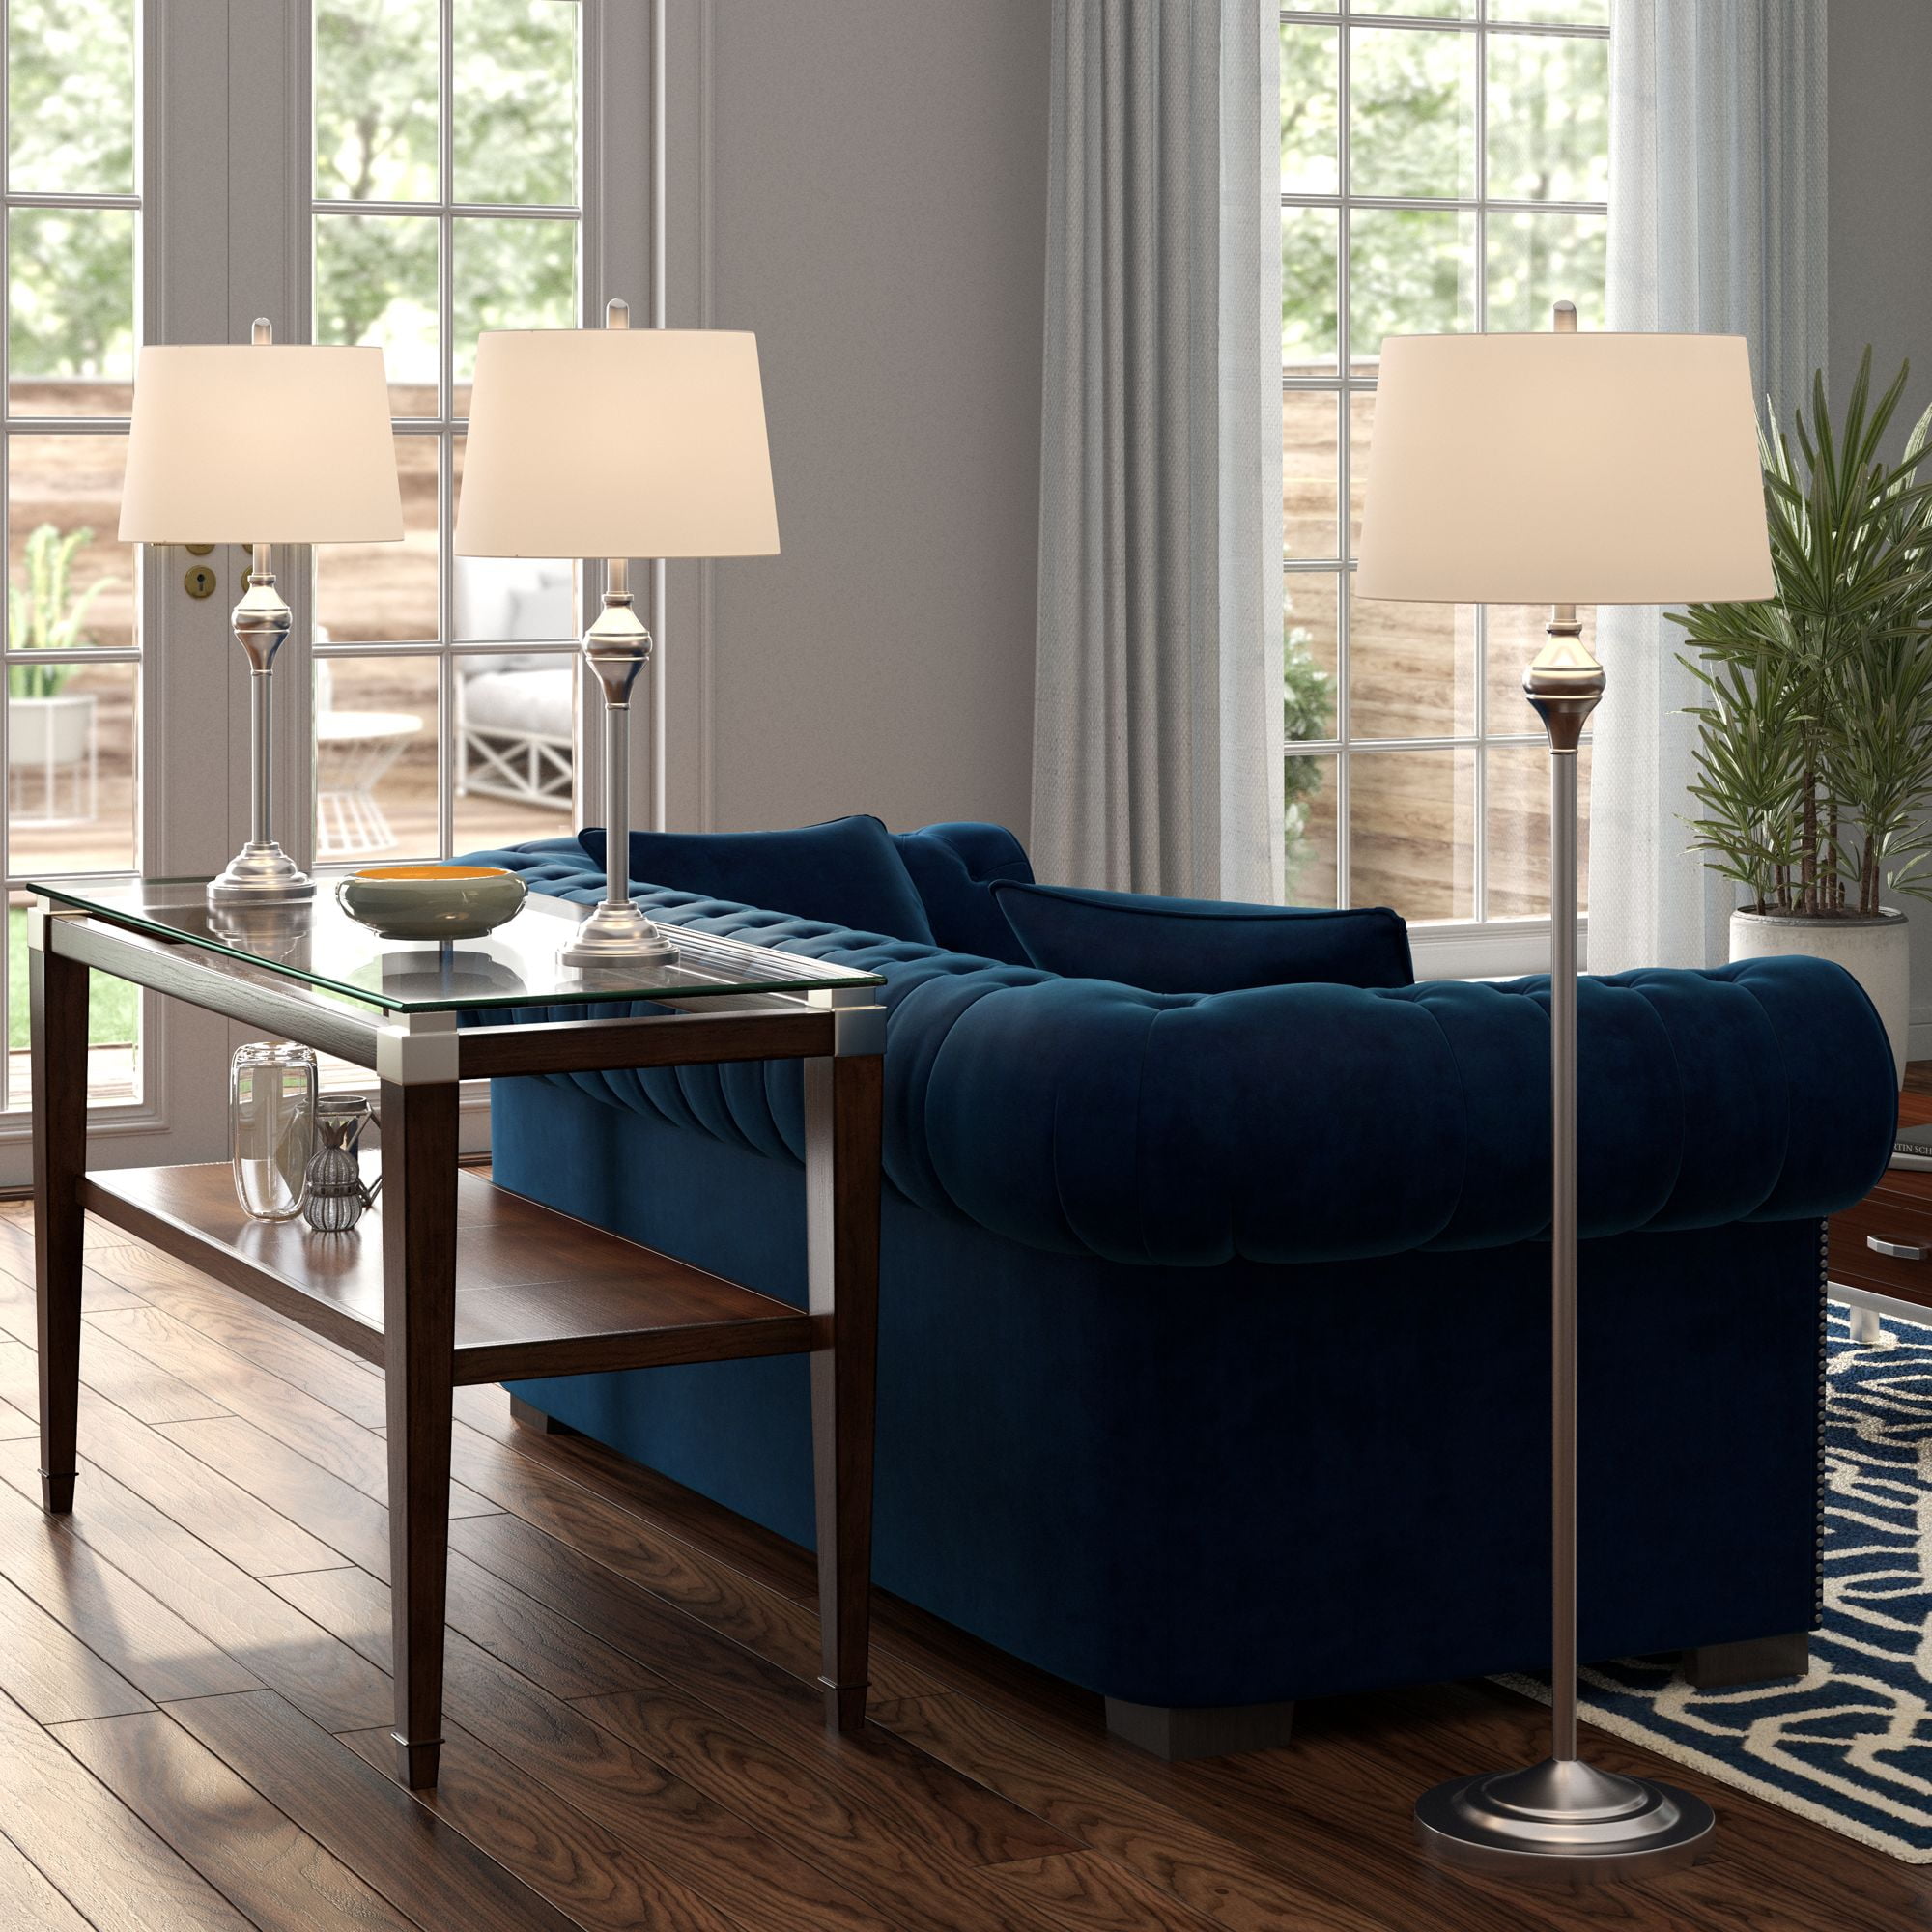 Better Homes & Gardens Modern Tripod Table & Floor Lamp Set Black Living room